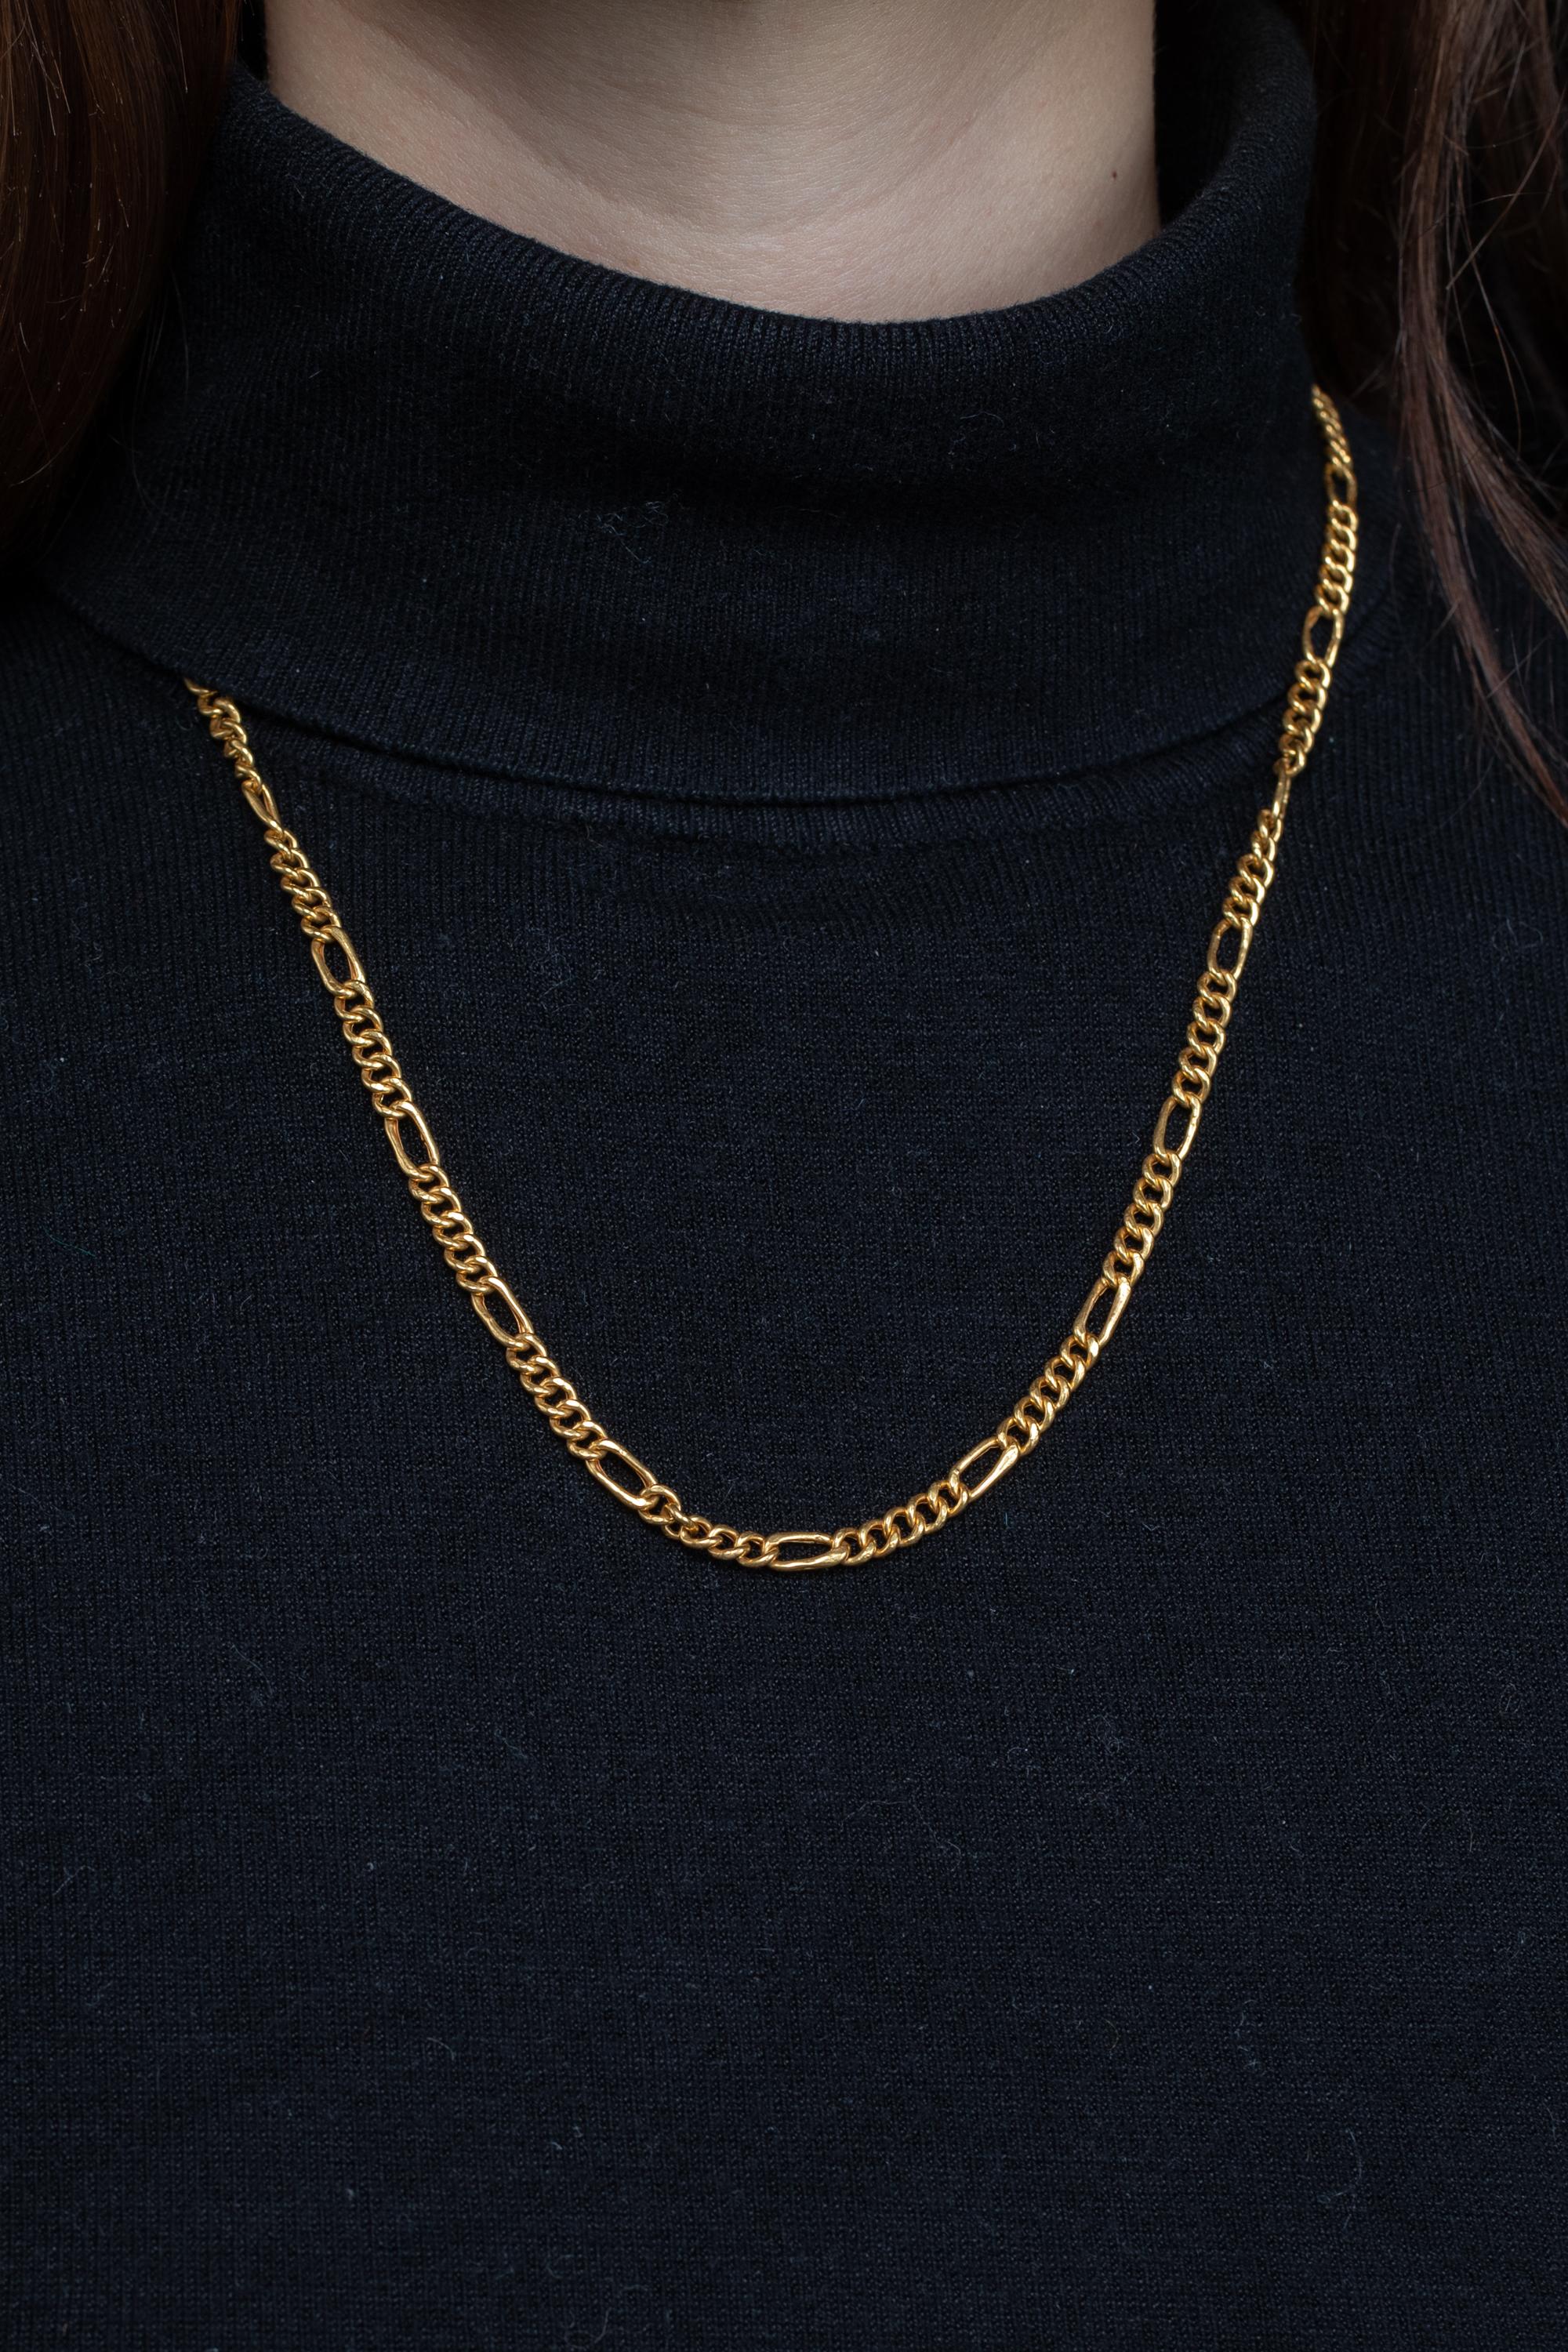 18 karat gold chain designs